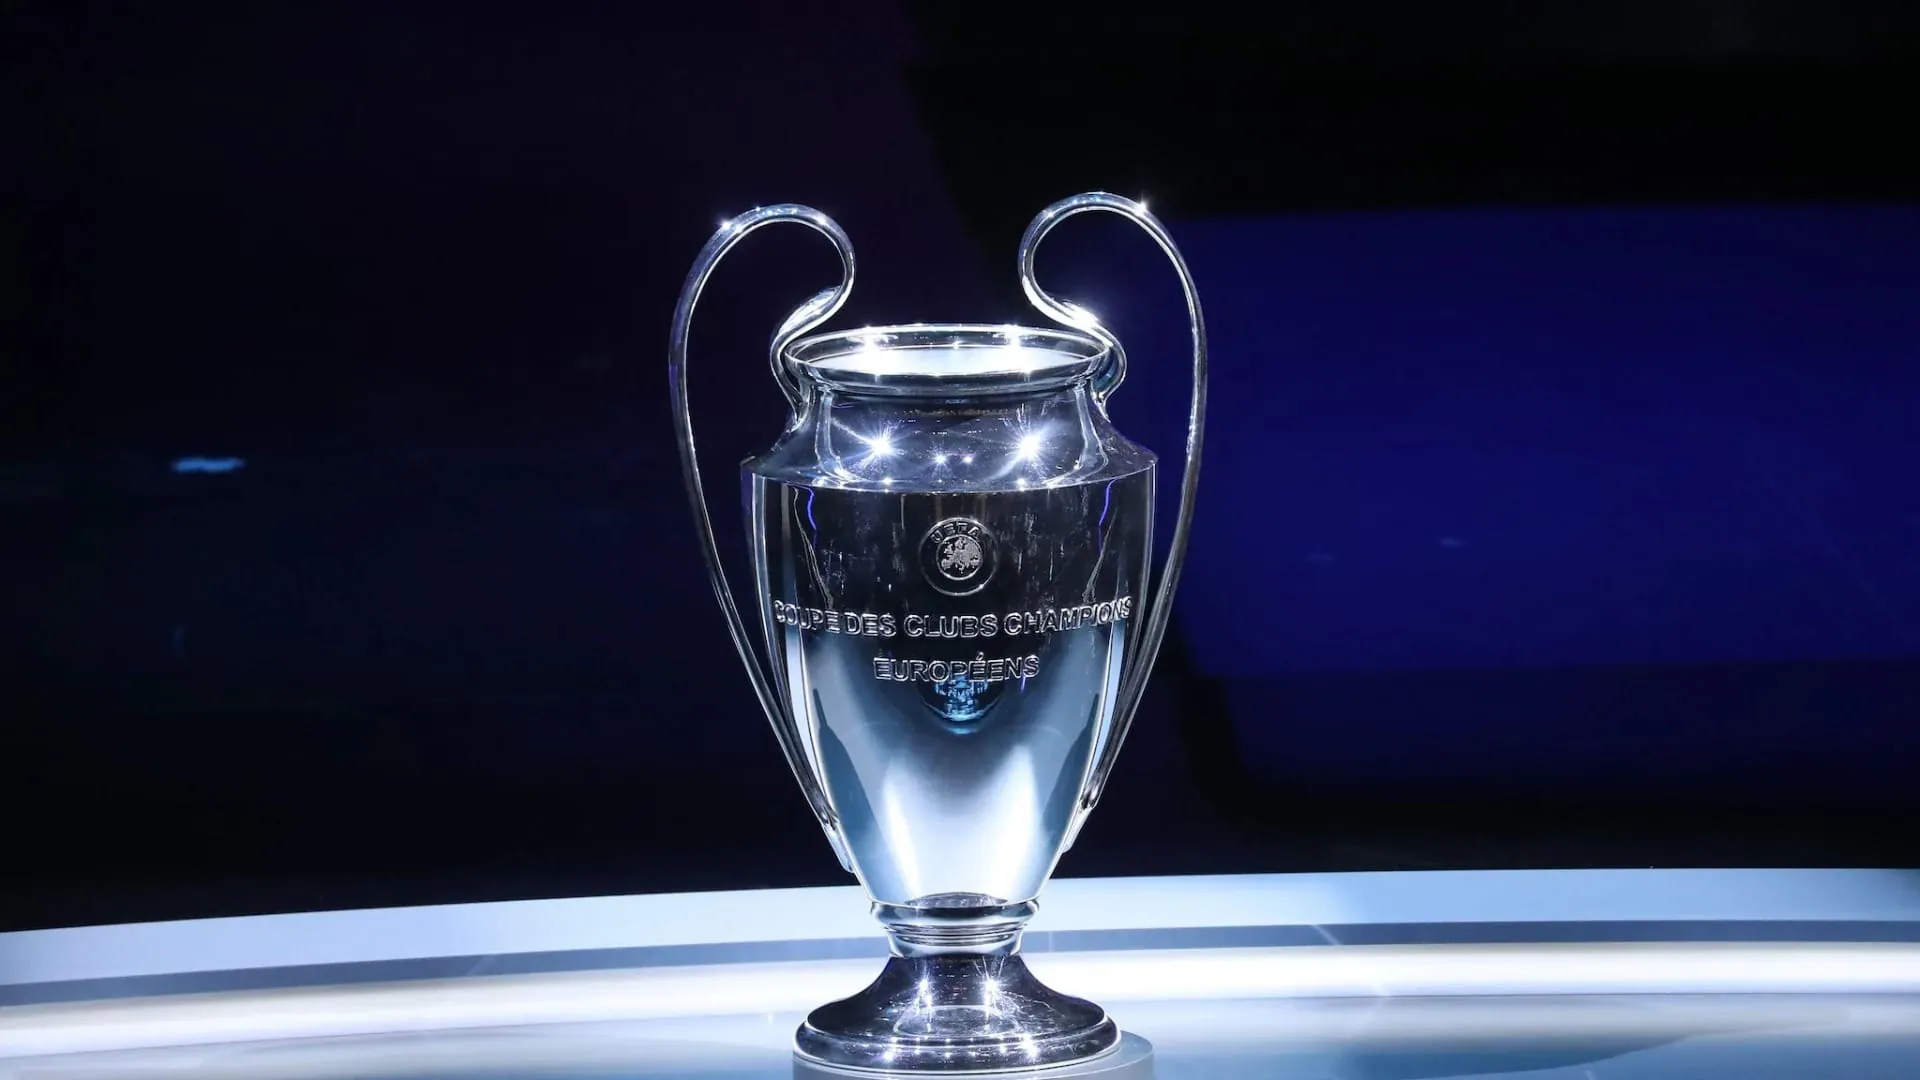 90mais  006 - Quartas de Final UEFA Champions League 2022/23 